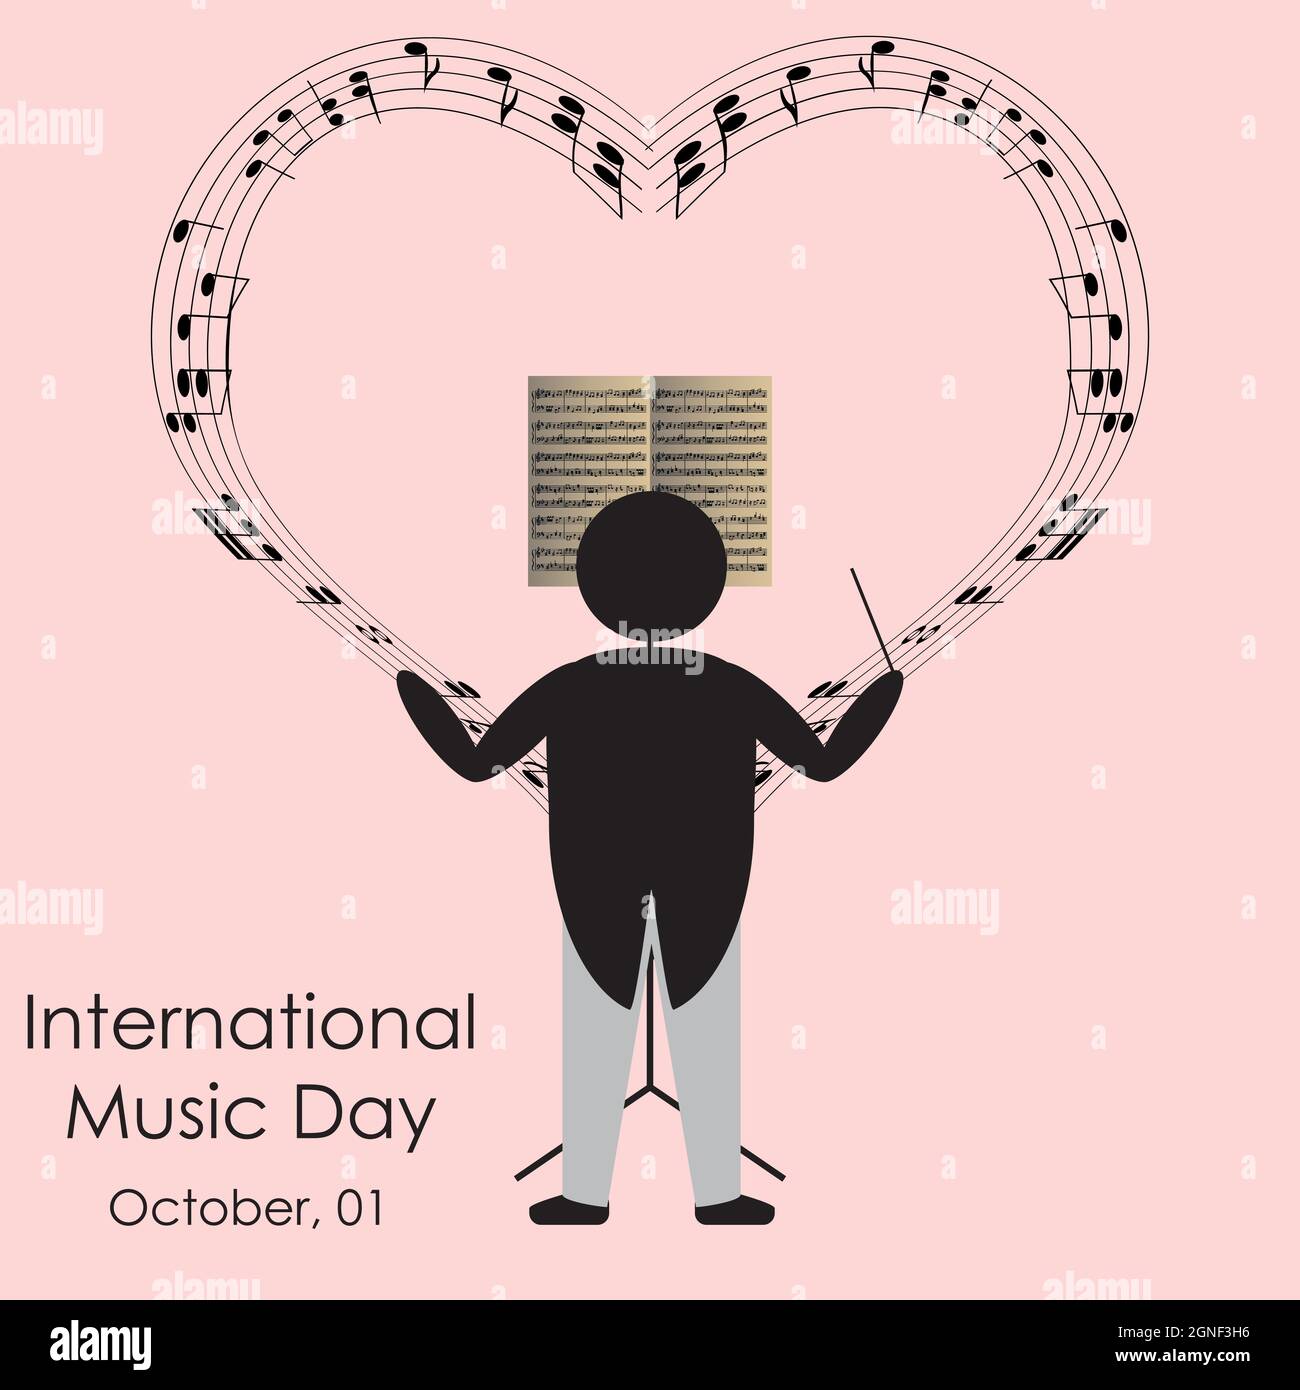 Un maestro di figura a bastone suona note musicali a forma di cuore, astrazione vettoriale astratta dell'evento internazionale della giornata musicale. Illustrazione di alta qualità Illustrazione Vettoriale